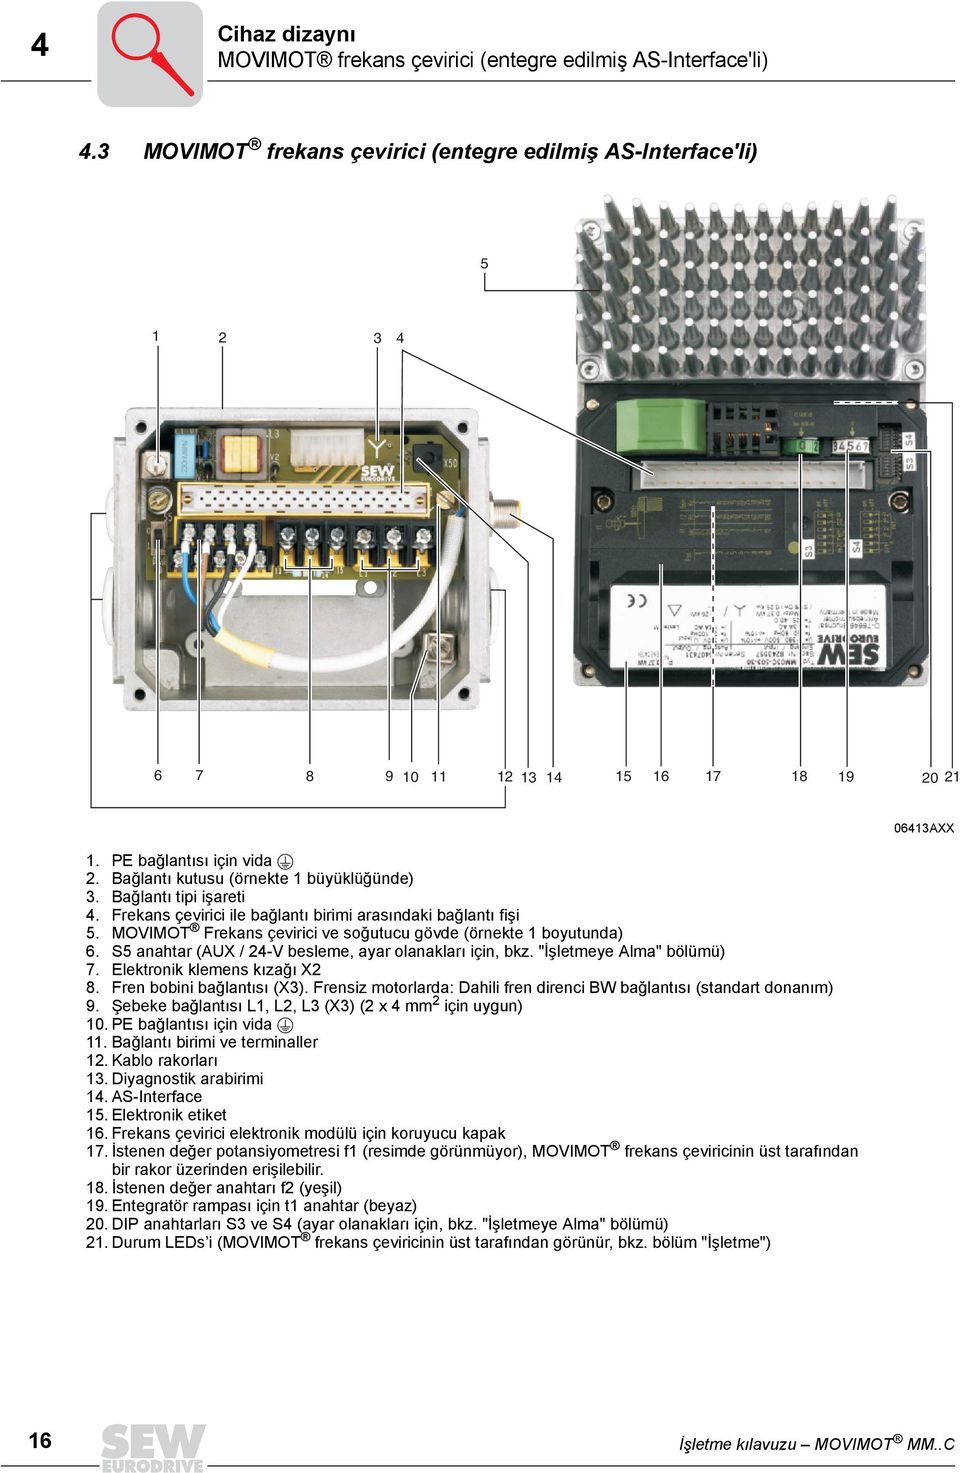 MOVIMOT Frekans çevirici ve soğutucu gövde (örnekte 1 boyutunda) 6. S5 anahtar (AUX / 24-V besleme, ayar olanakları için, bkz. "İşletmeye Alma" bölümü) 7. Elektronik klemens kızağı X2 8.